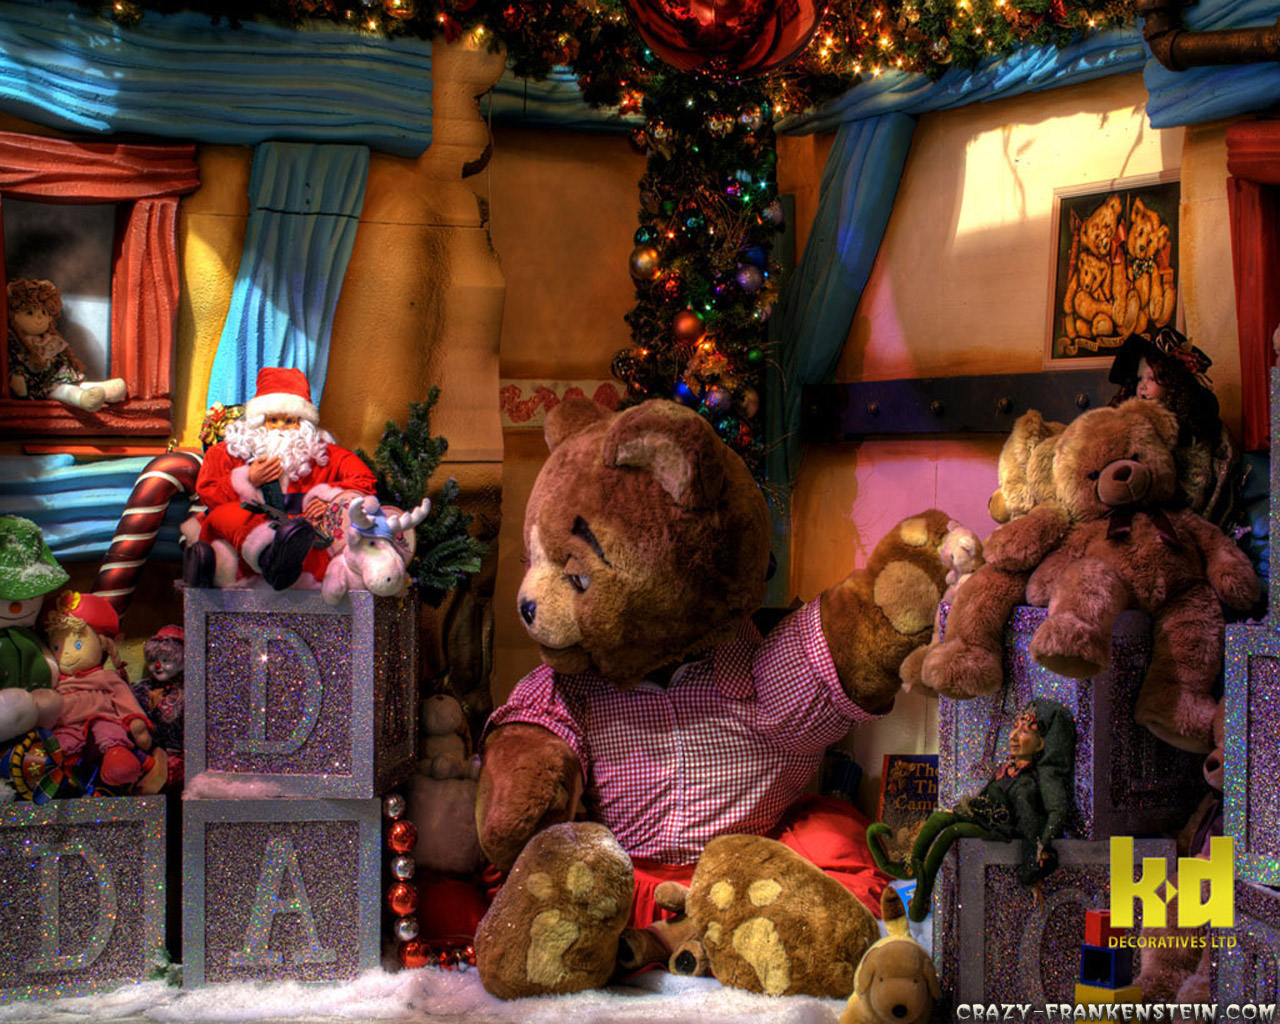 Christmas Teddy Bears Wallpapers